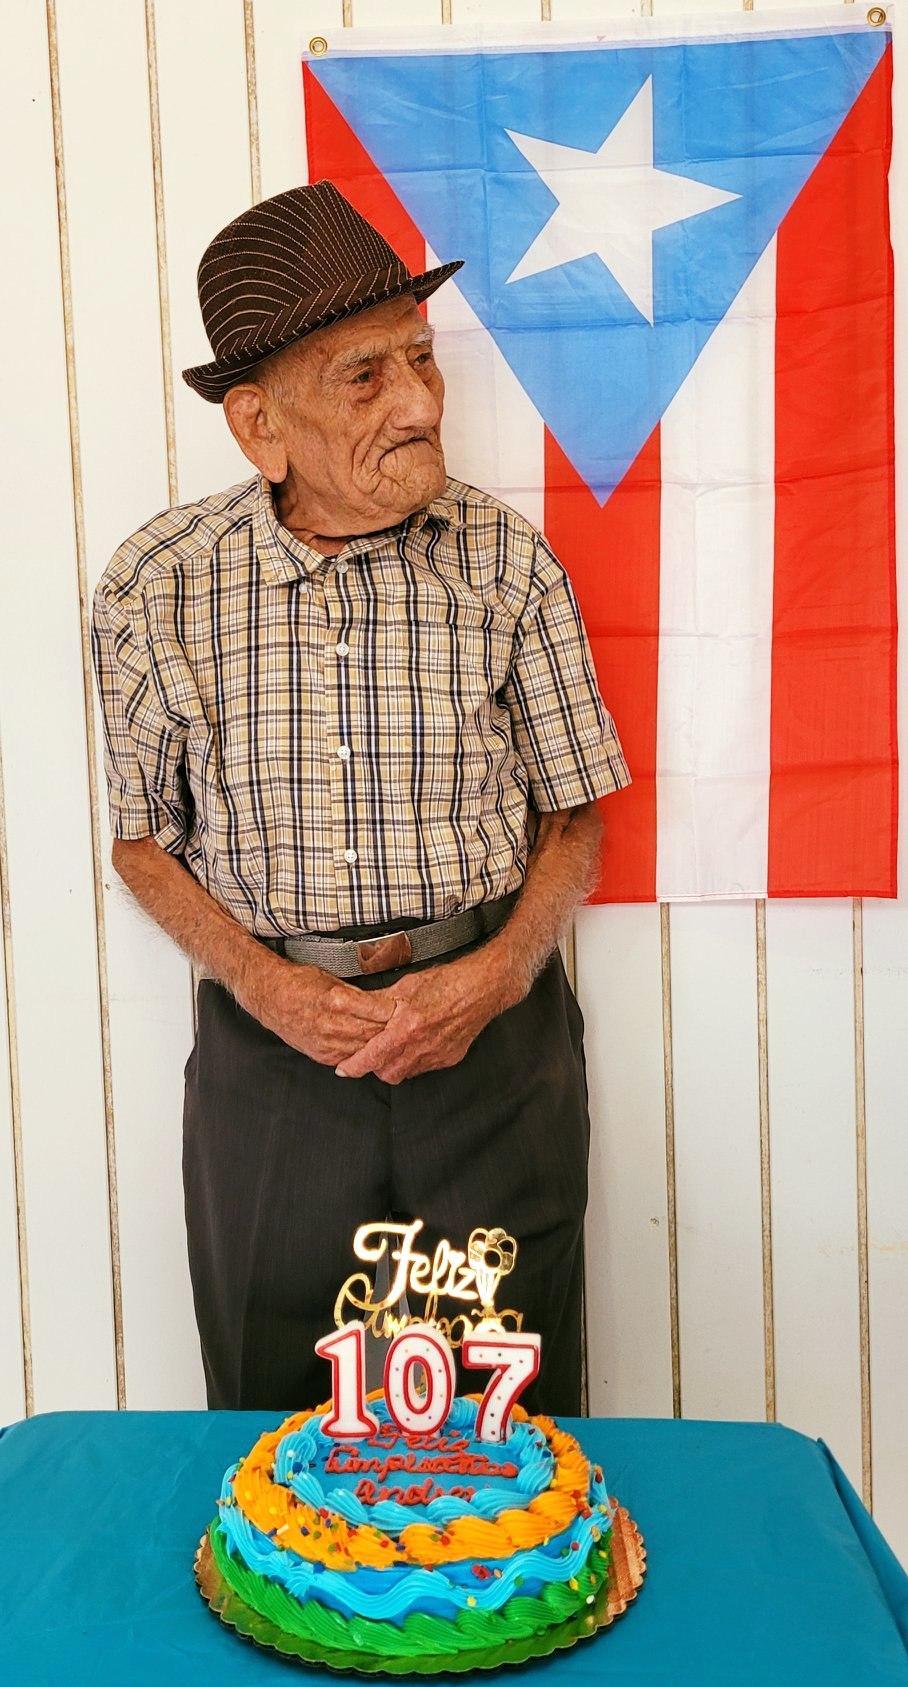 On his 107th birthday. (Source: Facebook (Conociendo a Puerto Rico))